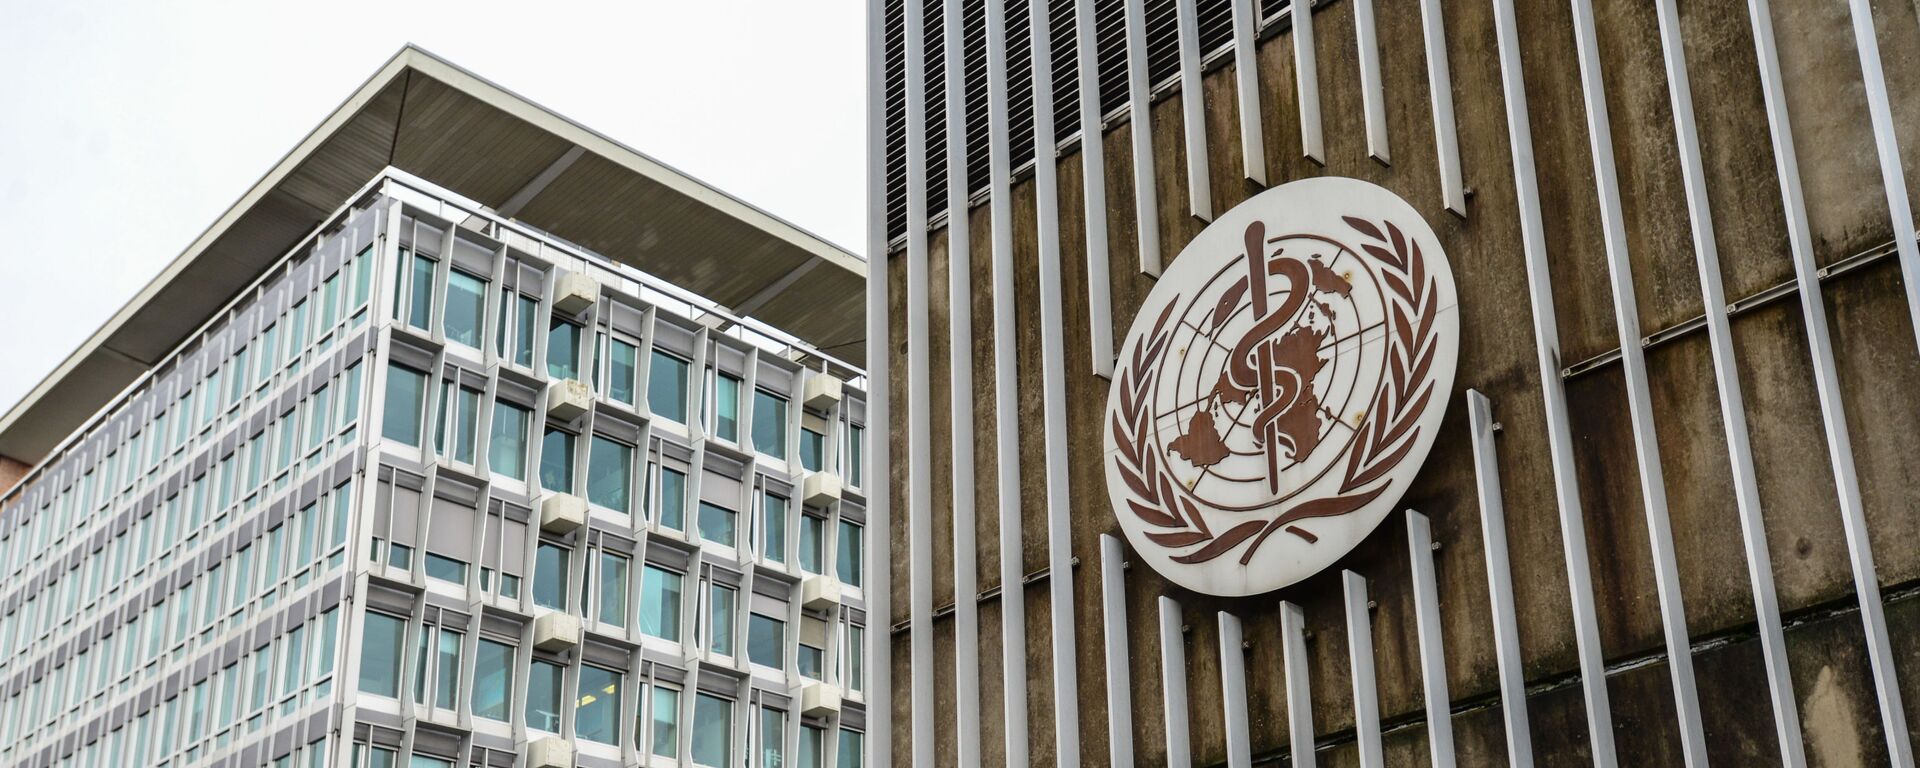 Здание штаб-квартиры Всемирной организации здравоохранения в Женеве.  - Sputnik Латвия, 1920, 13.07.2021